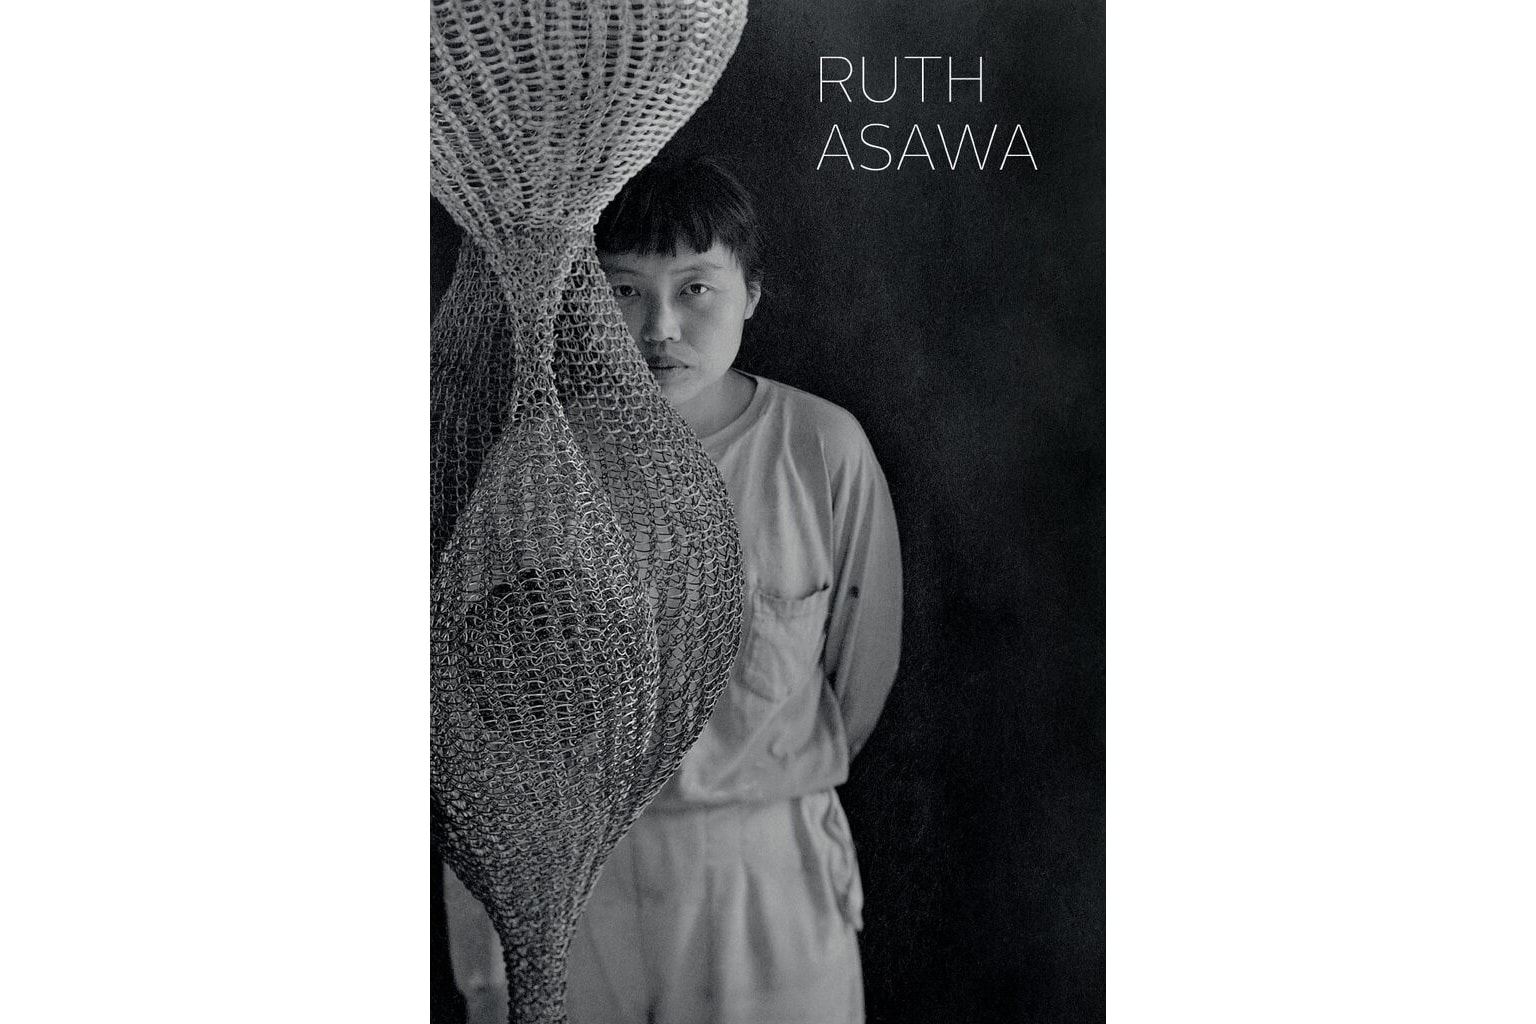 David Zwirner Books 出版藝術家 Ruth Asawa 全新小傳